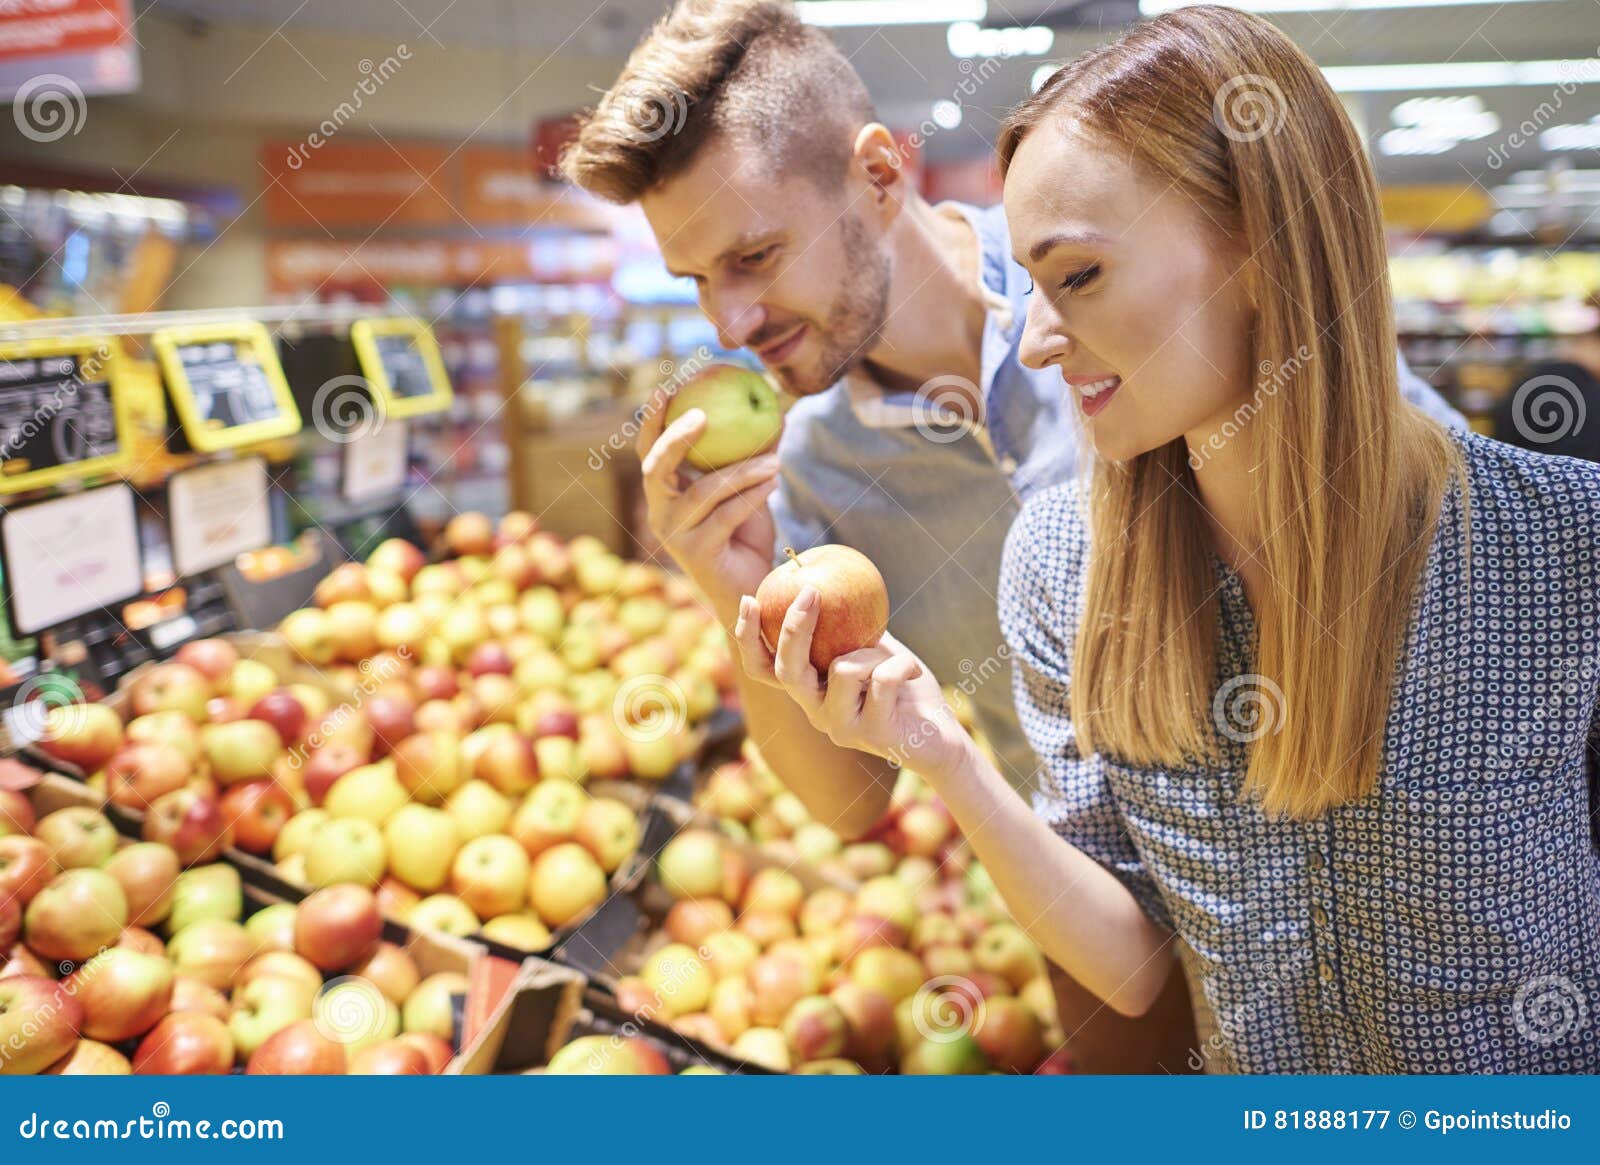 Есть 75 яблок выберите все верные. Яблоко магазин. Человек выбирает фрукты. Девушка выбирает фрукты в супермаркете. Выбор фруктов.